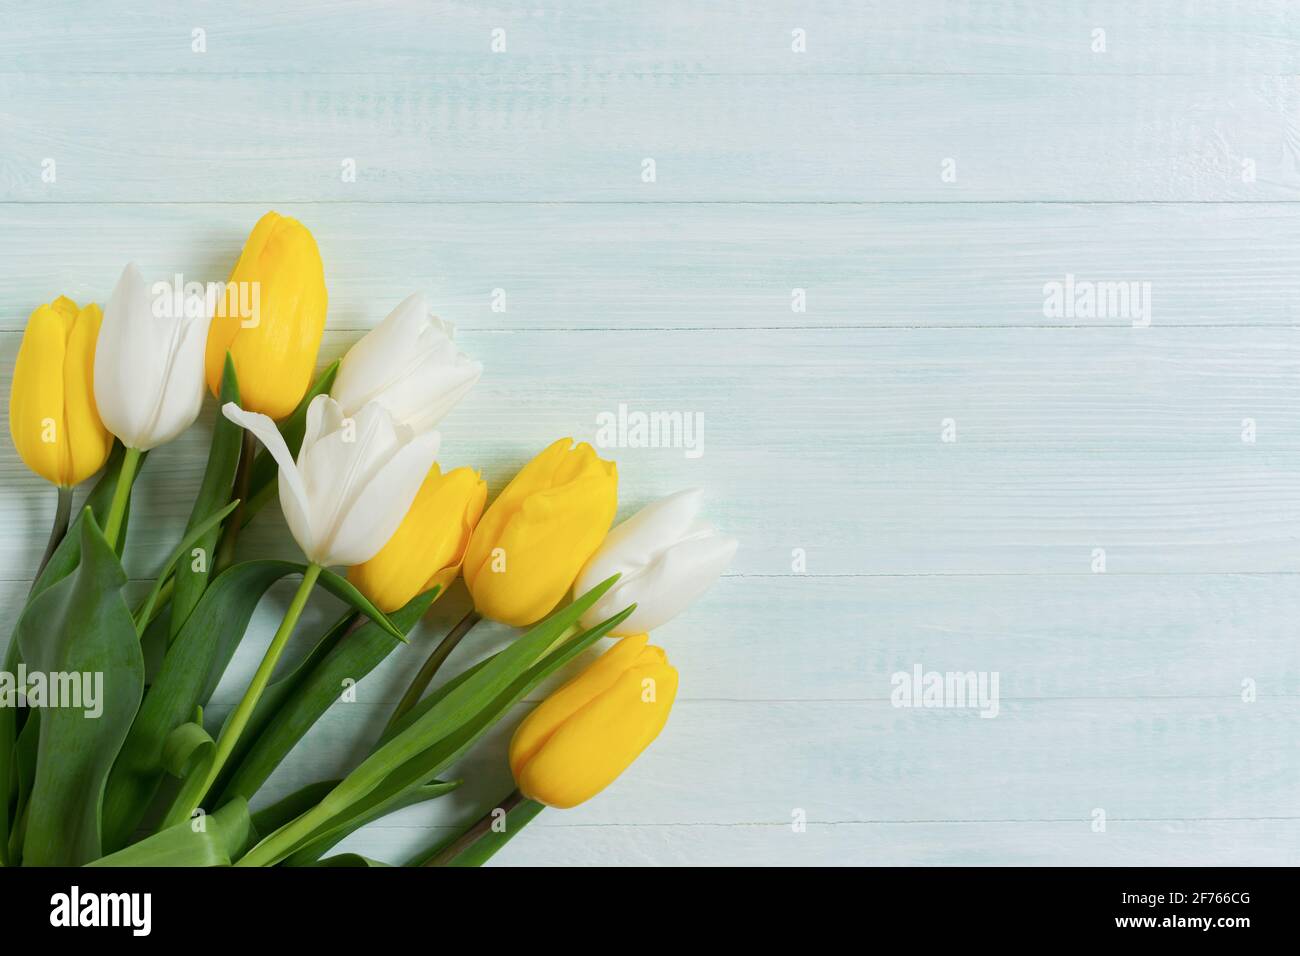 Fond jaune blanc tulipes bois menthe. Maquette pour anniversaire, mariage, Fête des mères, Journée internationale de la femme. Plat, vue de dessus d'un bouqu cadeau Banque D'Images